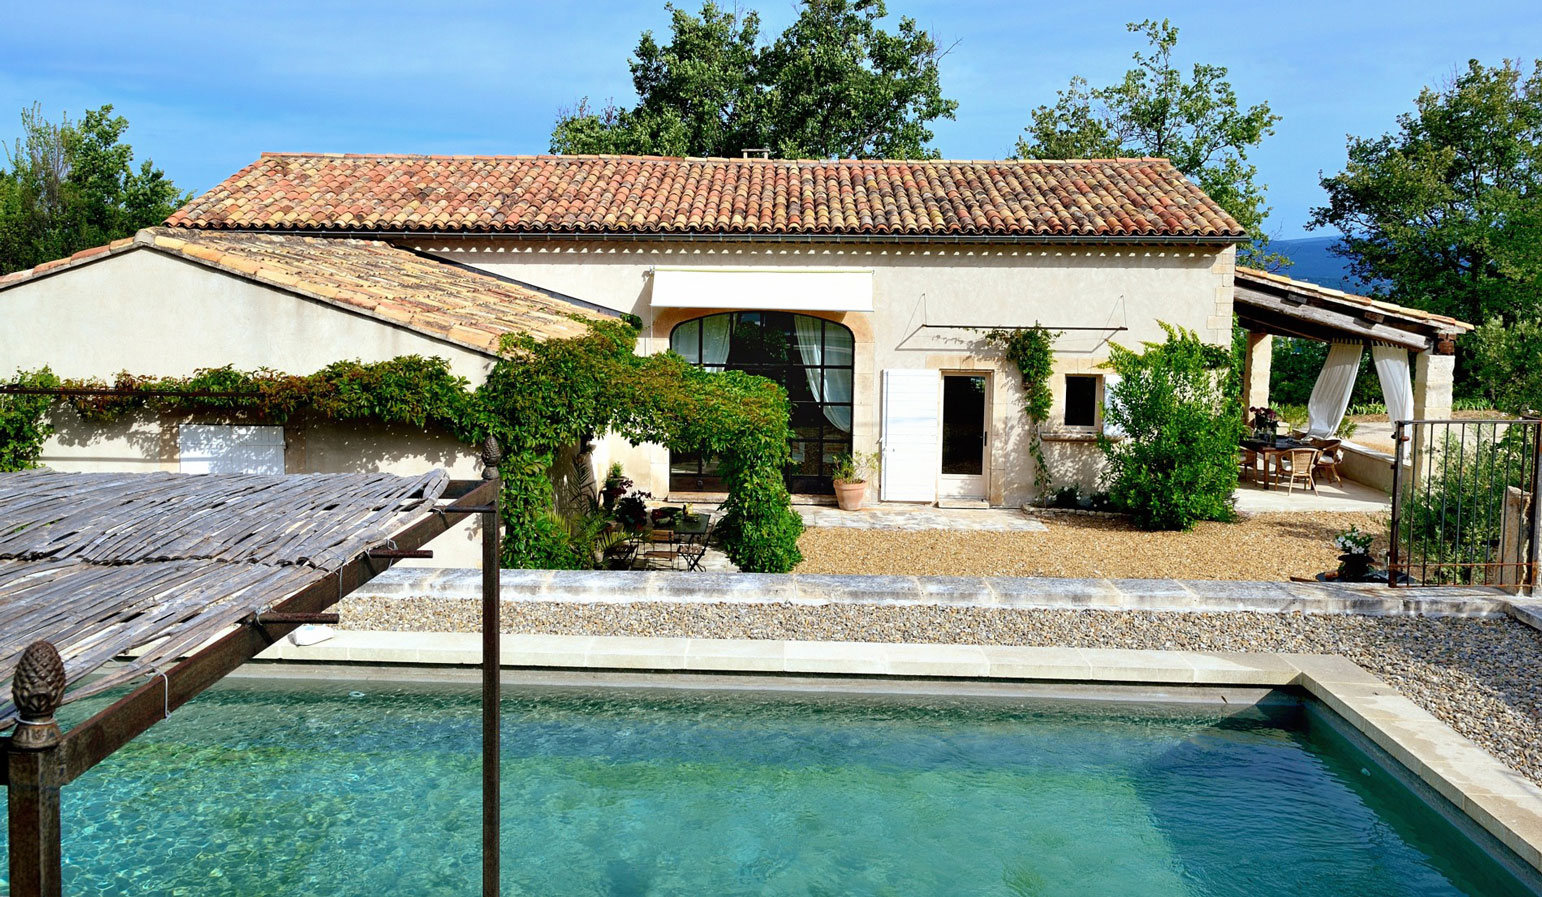 Location dans le Luberon, proche Saignon, maison provençale avec piscine et vue